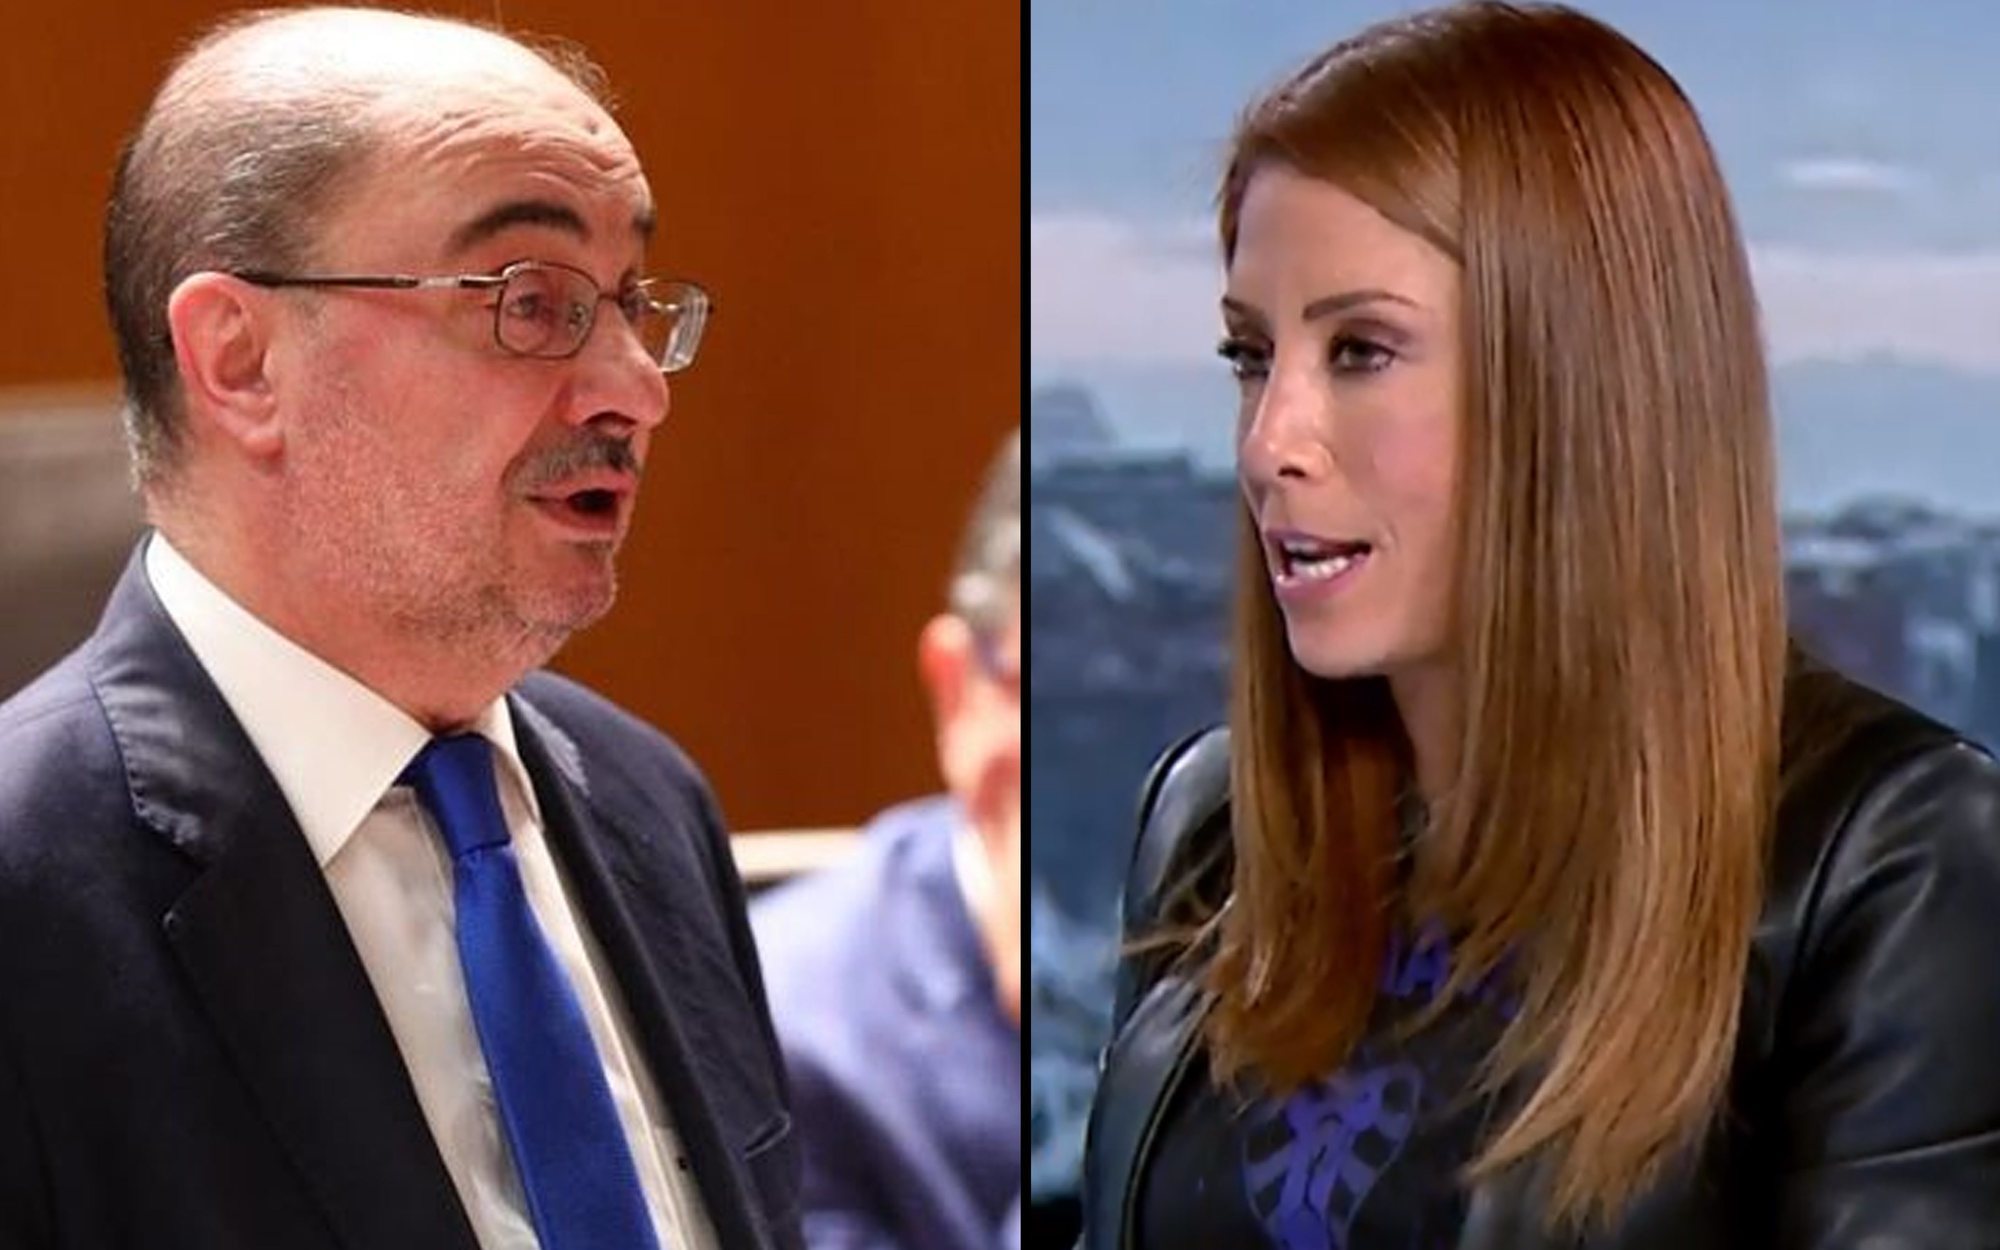 La meteoróloga de laSexta critica duramente al presidente de Aragón: "No tiene ni idea de ciencia"